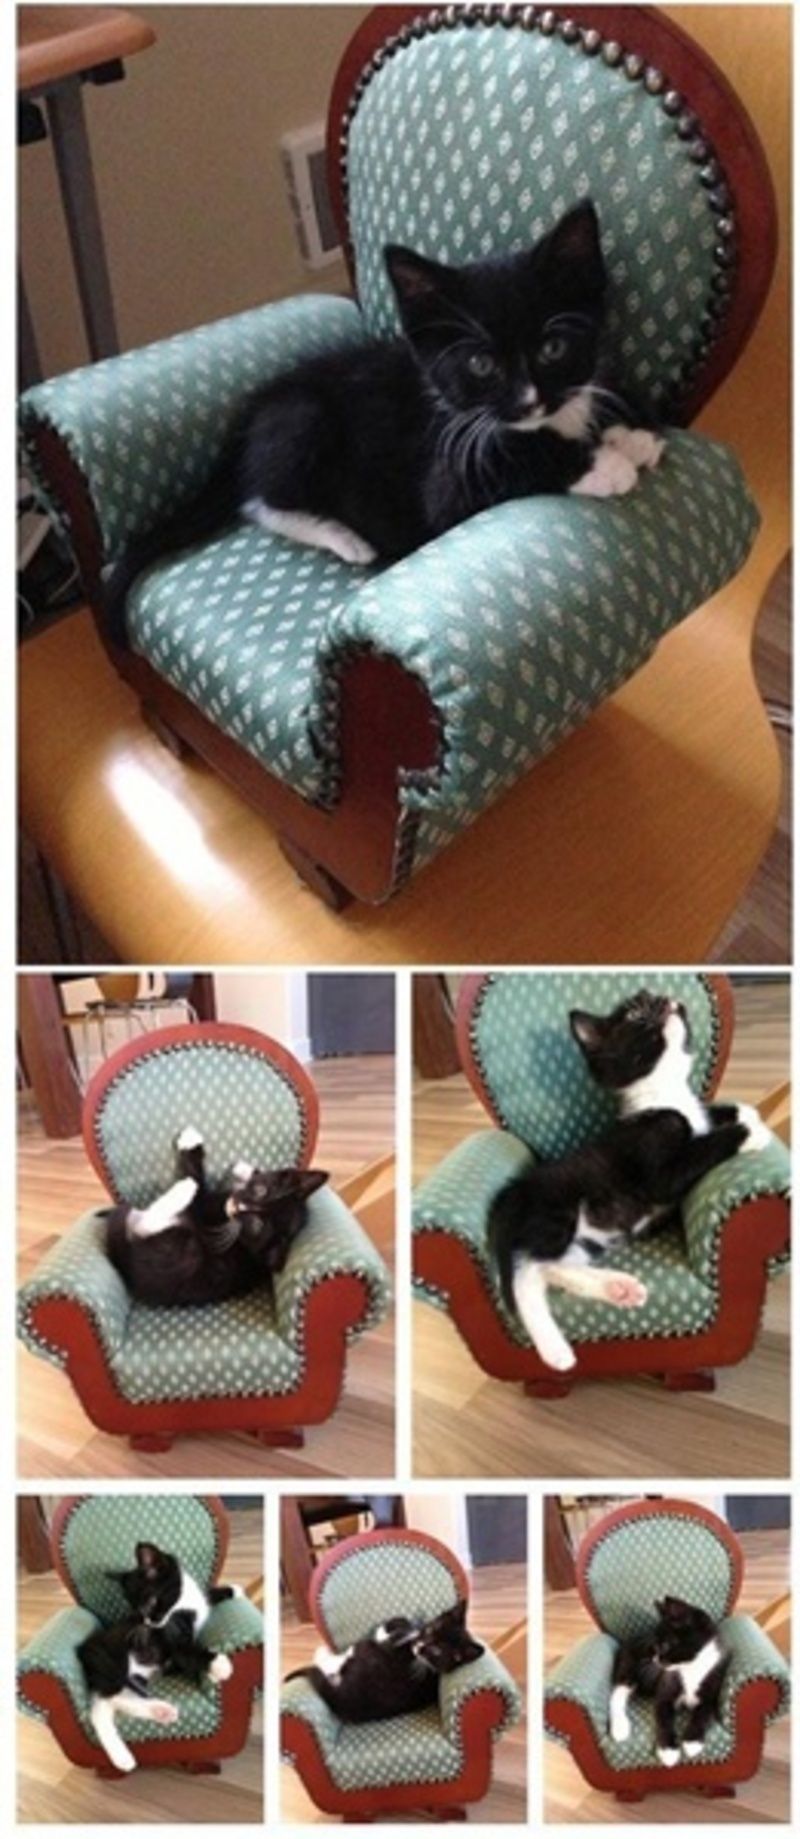 chat-dans-son-fauteuil.jpg